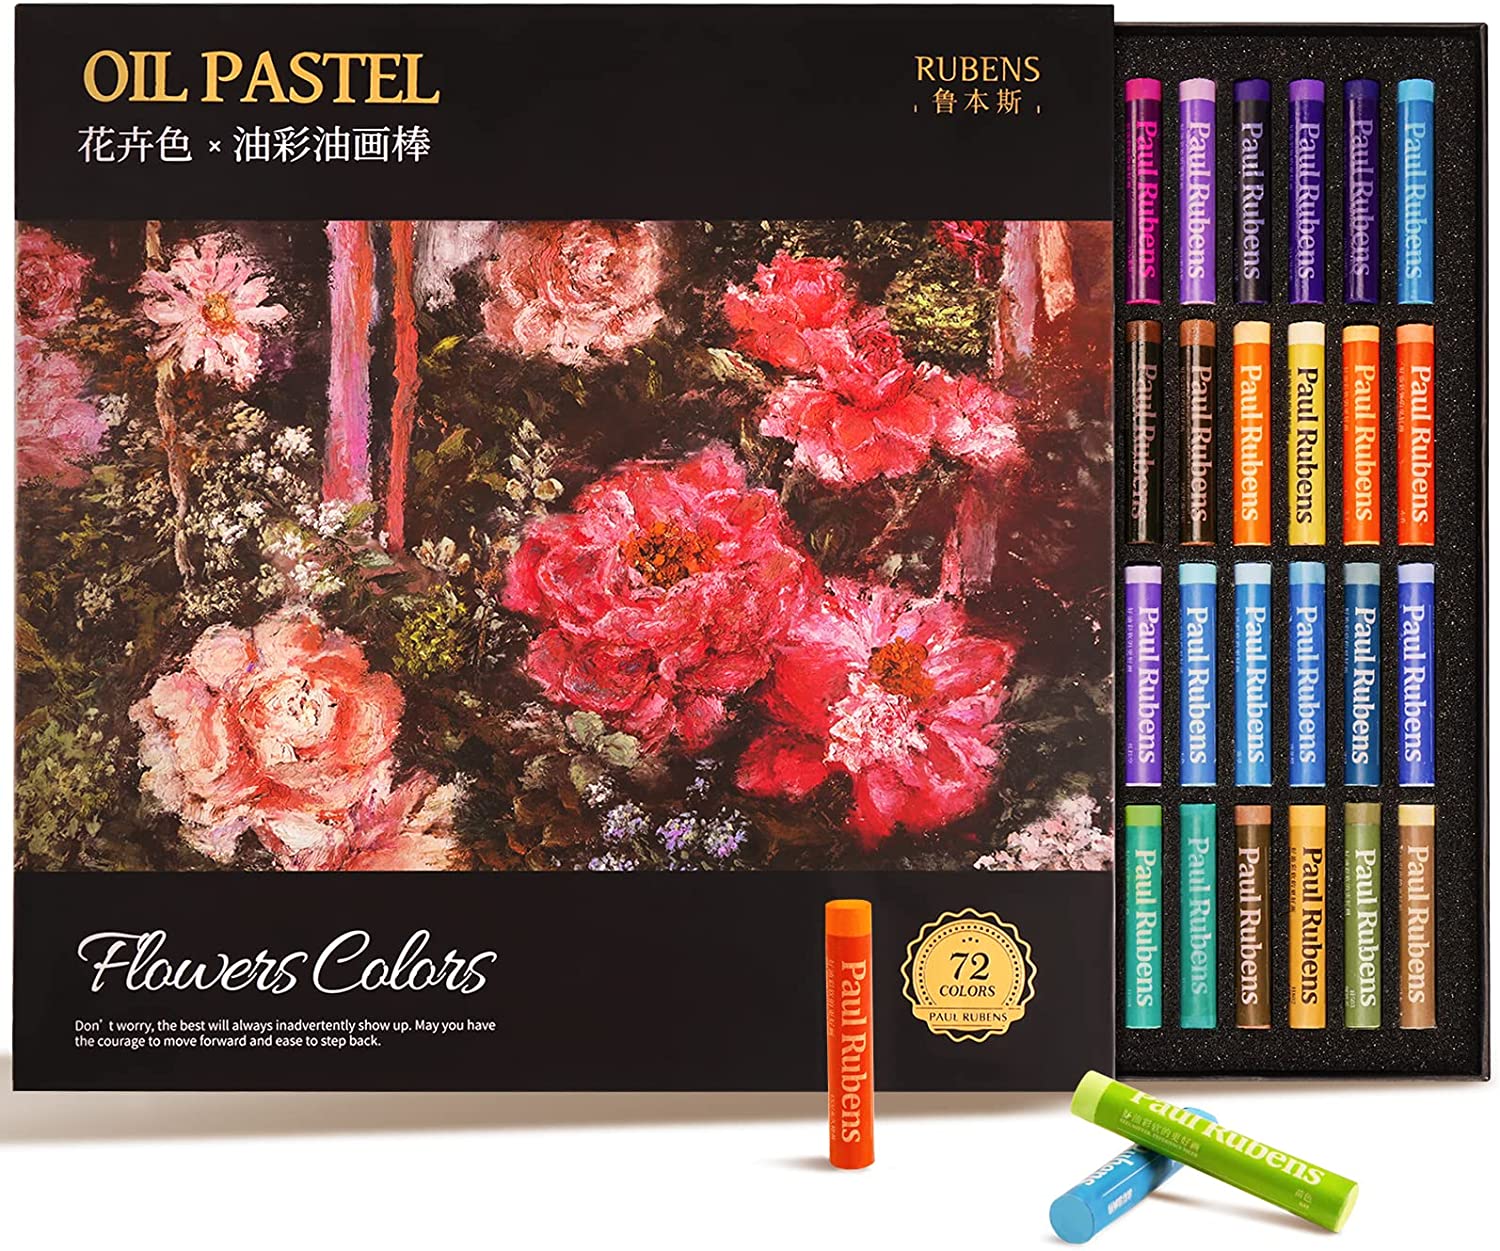 Paul Rubens Art Supplies Oil Pastels, 36 Pastels Colors Artist